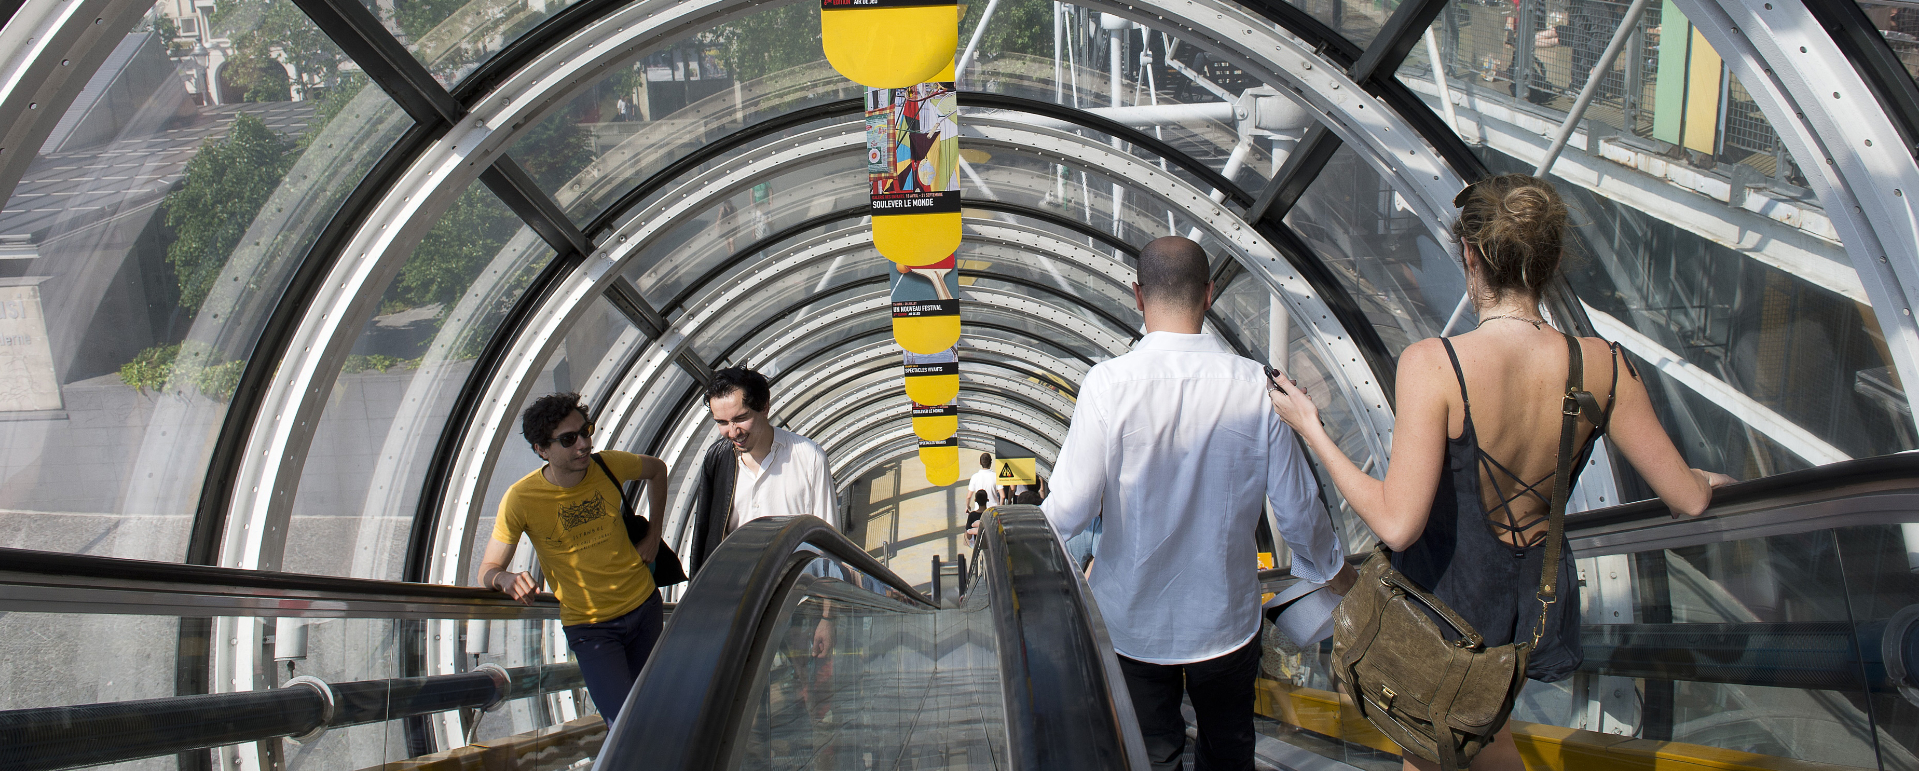 ©Atout France/Daniel THIERRY - Visiteurs dans l’escalator du Musée d’art moderne du Centre Pompidou, Centre Beaubourg)